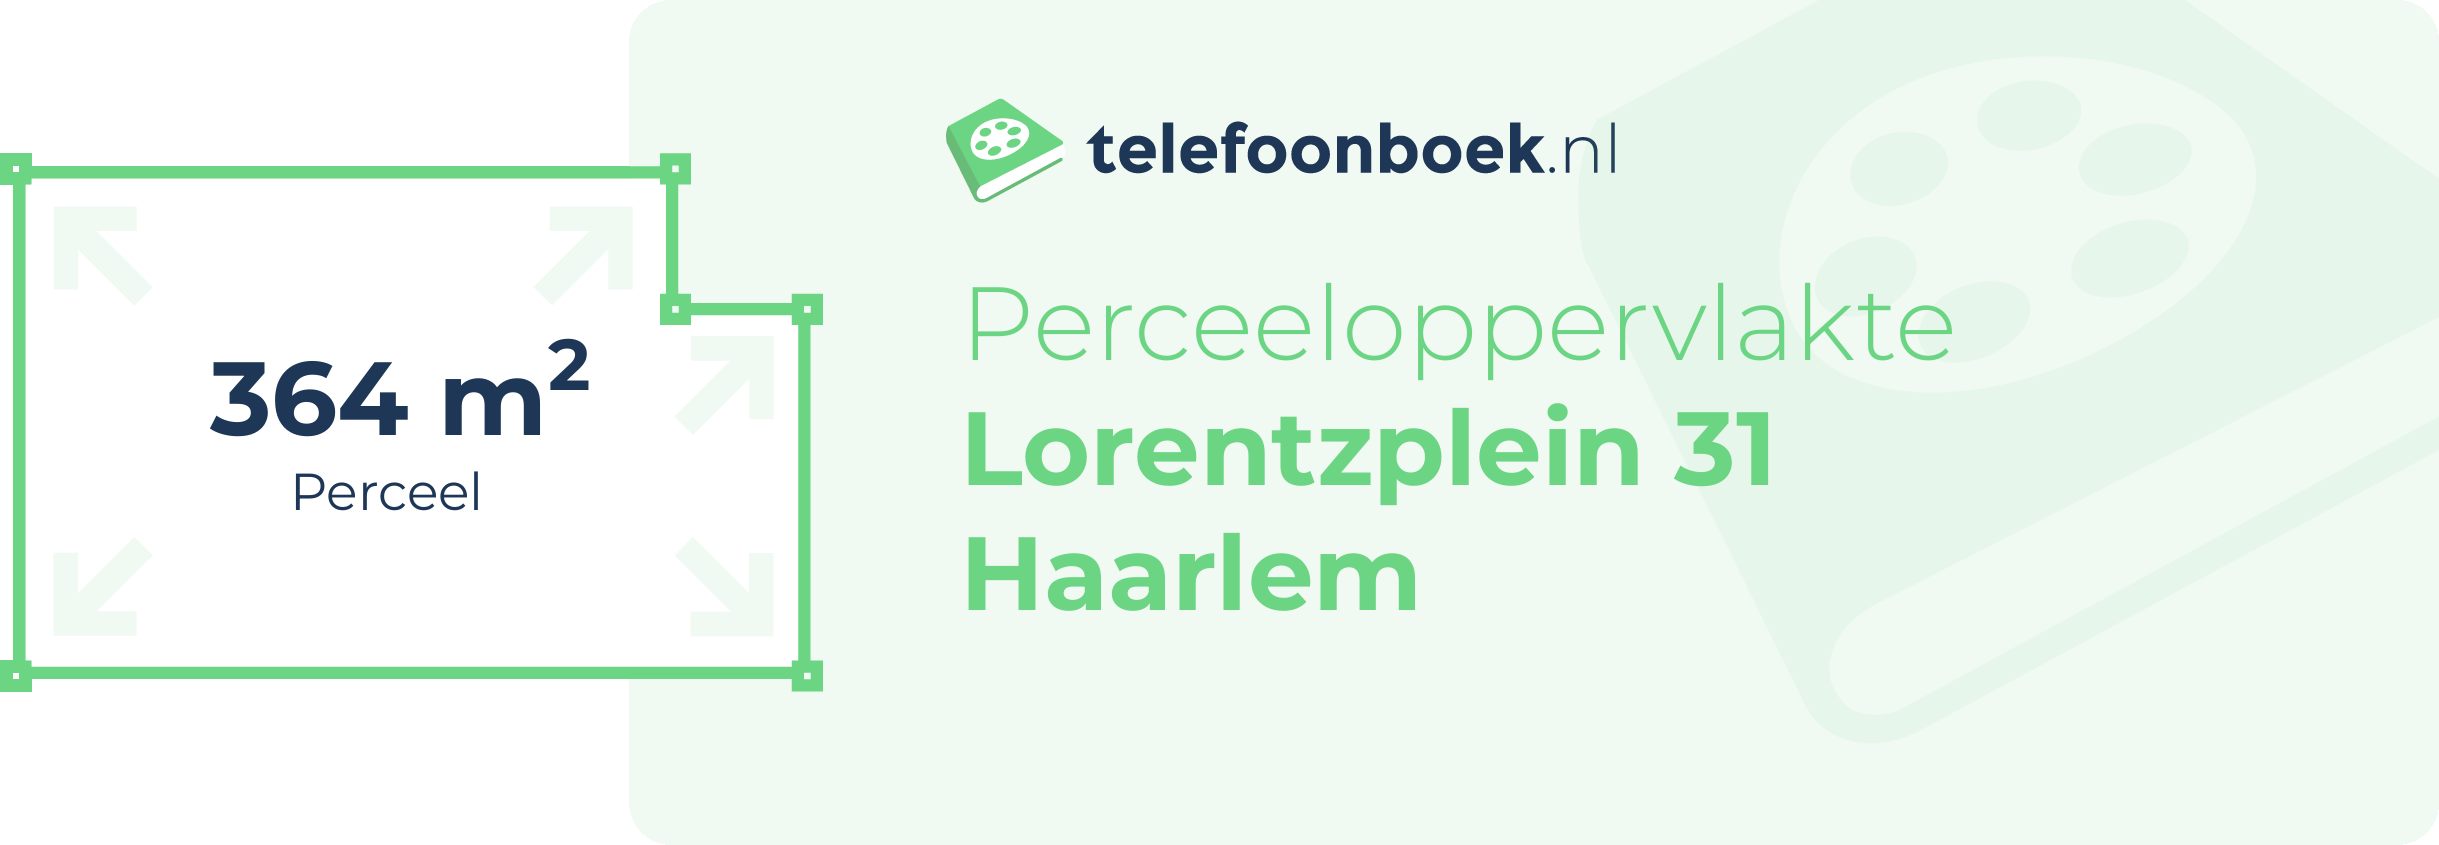 Perceeloppervlakte Lorentzplein 31 Haarlem